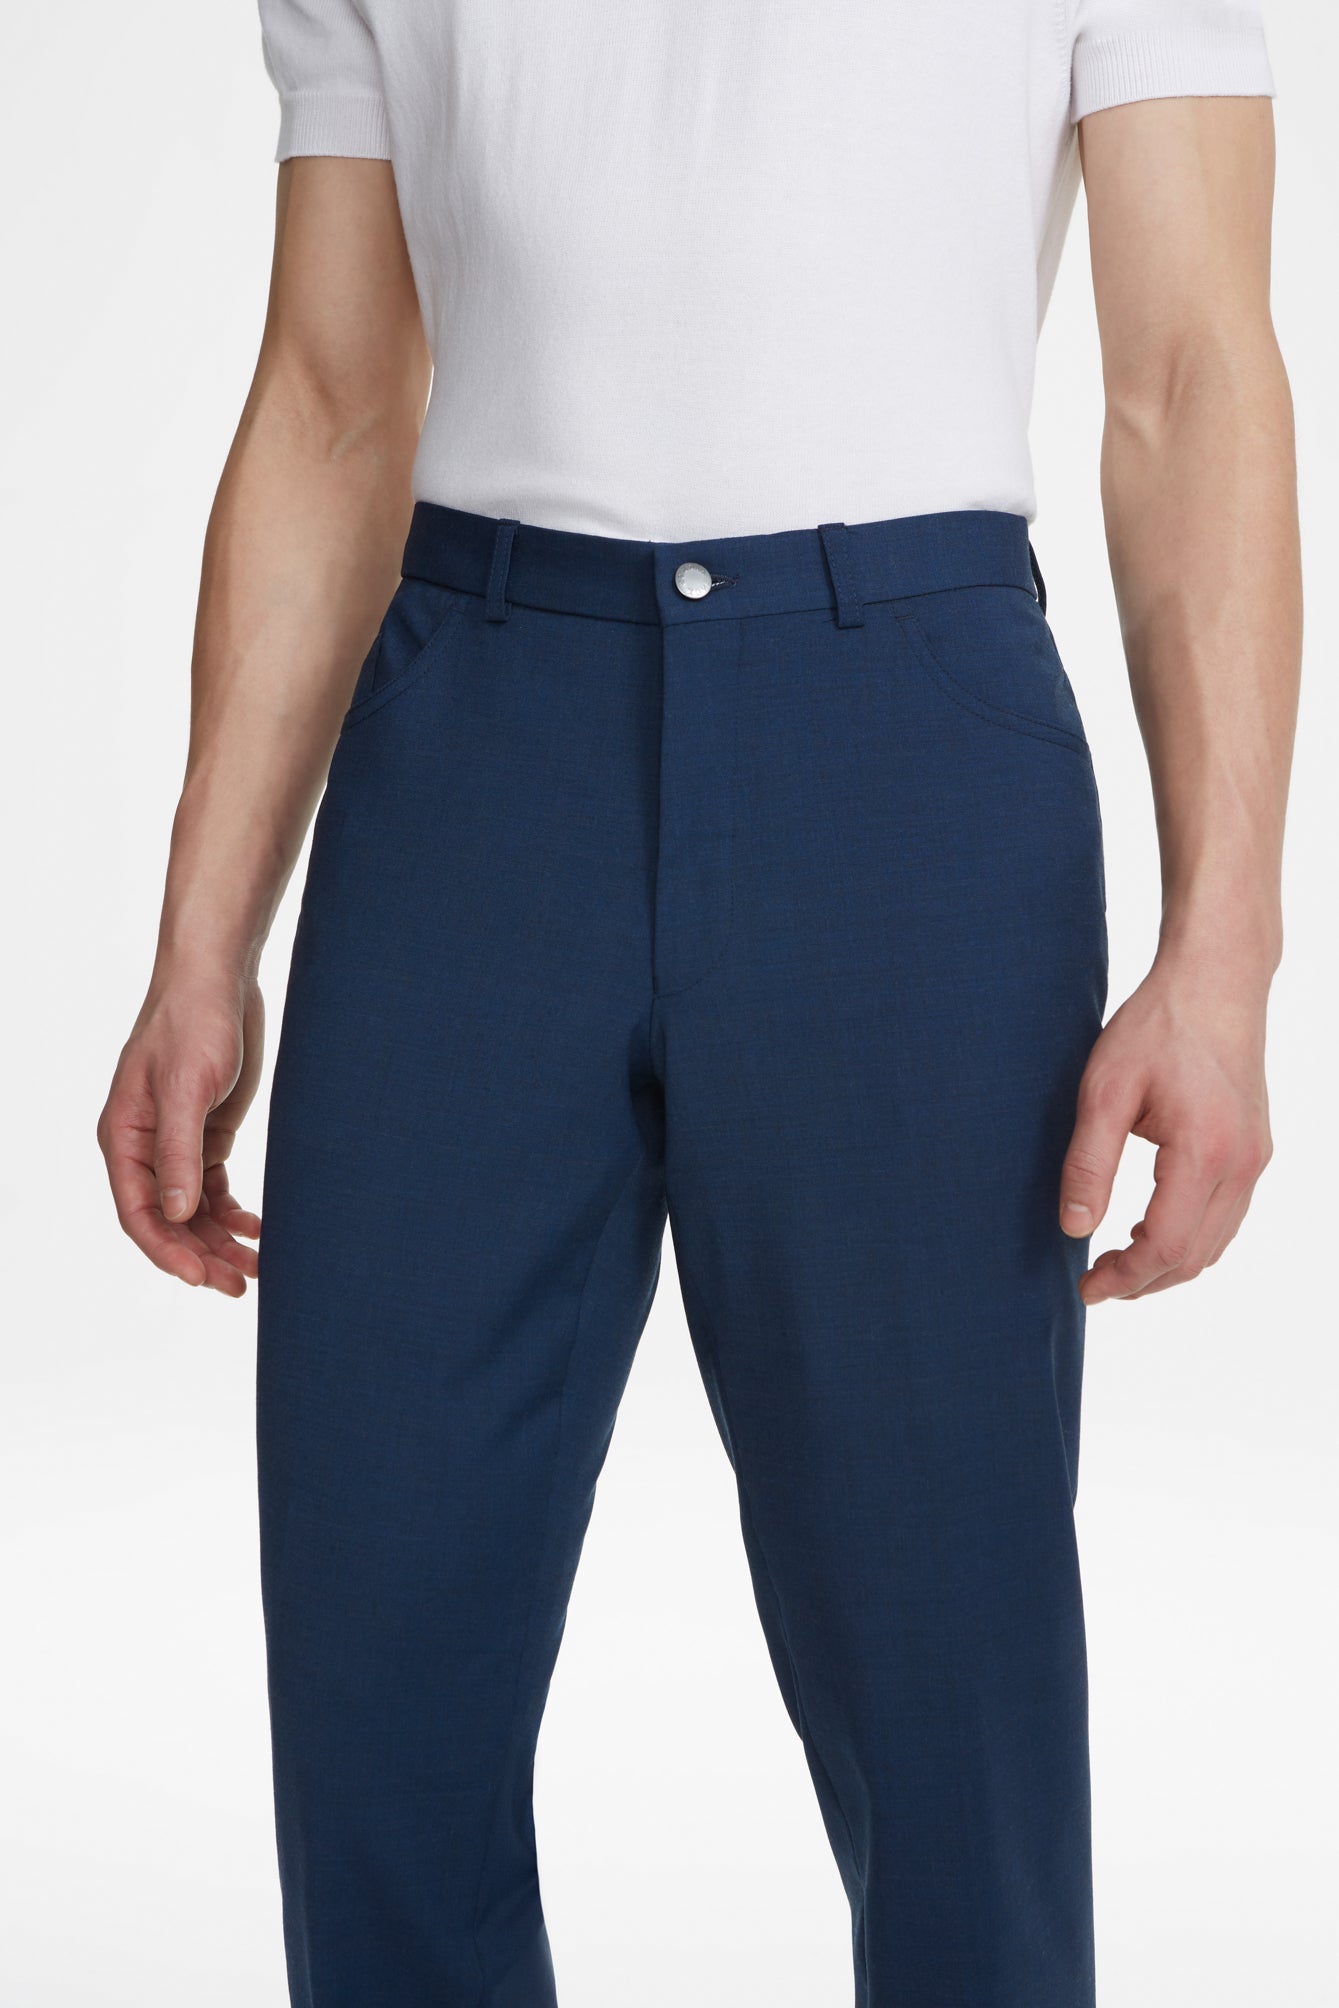 Vue alternative Pantalon de voyage à 5 poches bleu marine uni Sage